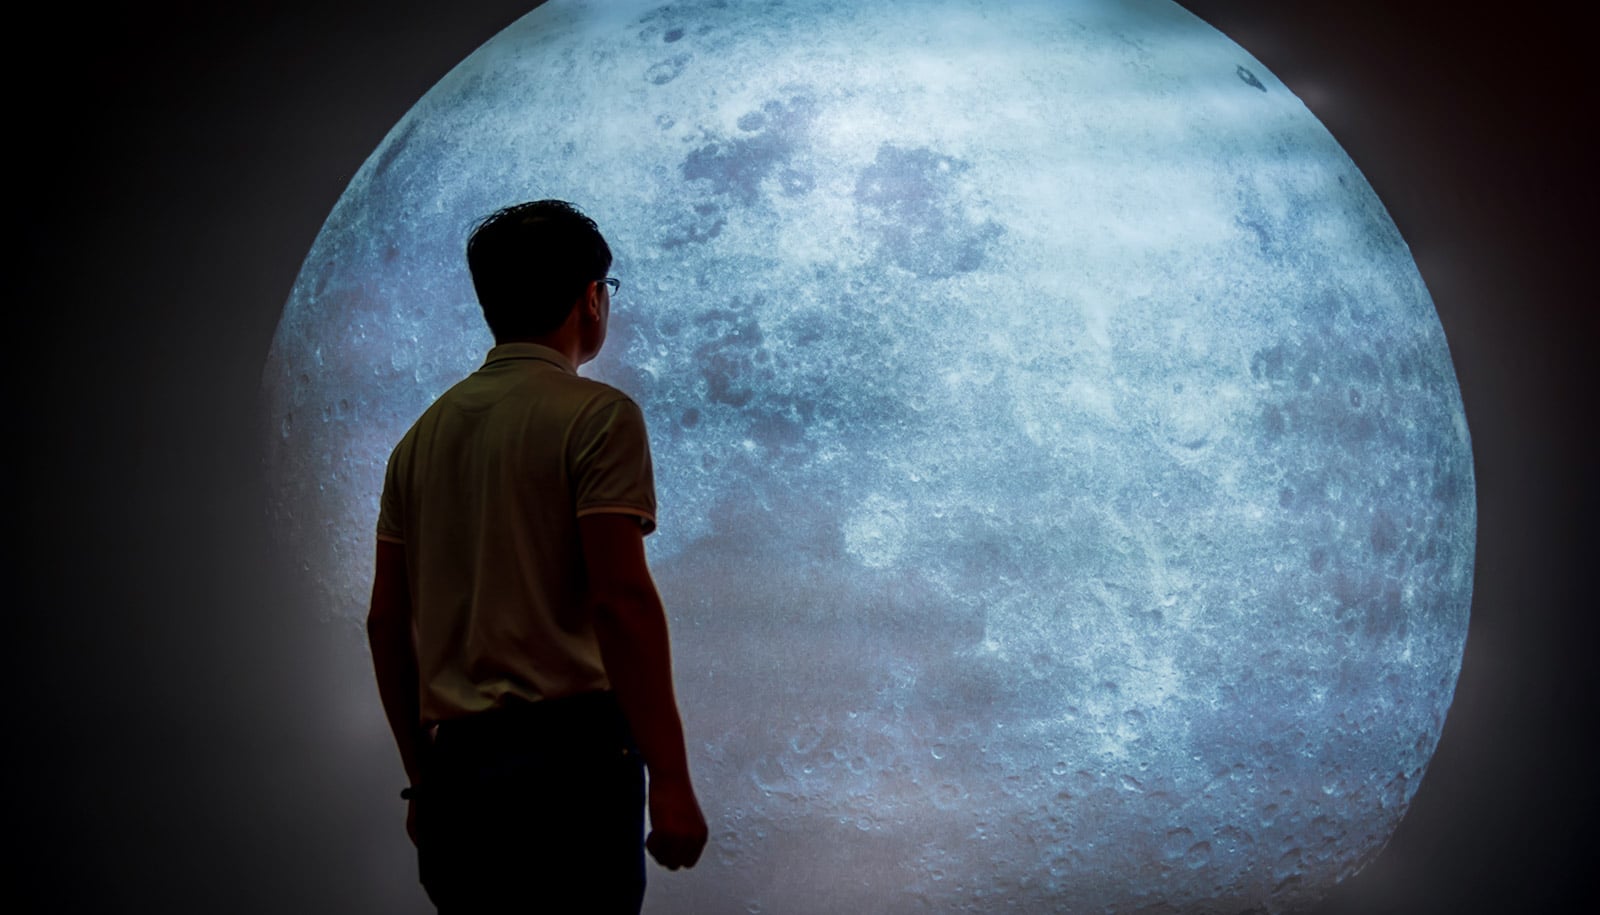 Ein Mann betrachtet eine Mondprojektion an der Wand eines dunklen Raums.